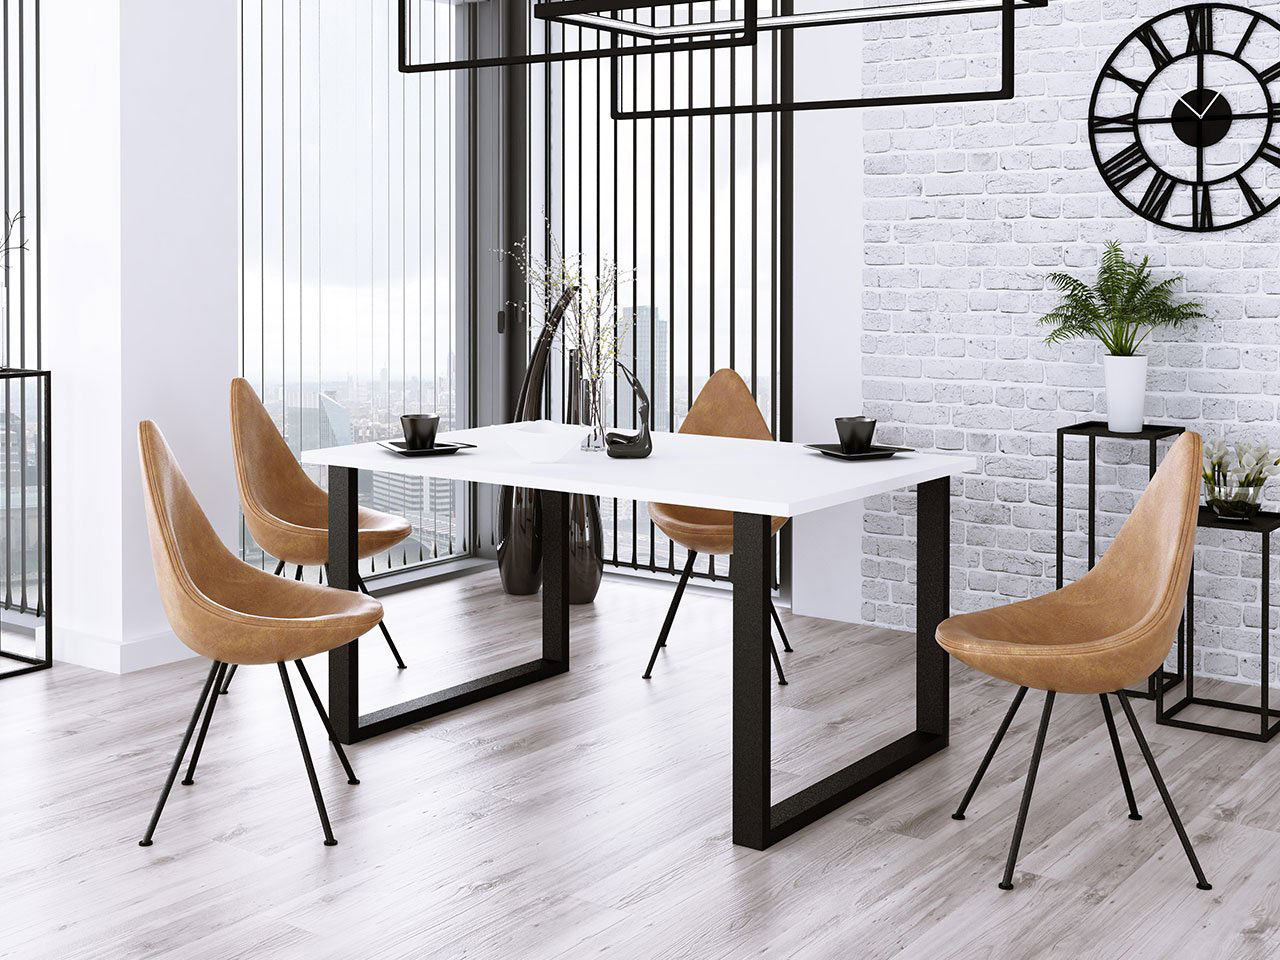 Az asztalláb megakadályozhatja, hogy az asztalfőn ülők székei behúzhatóak legyenek